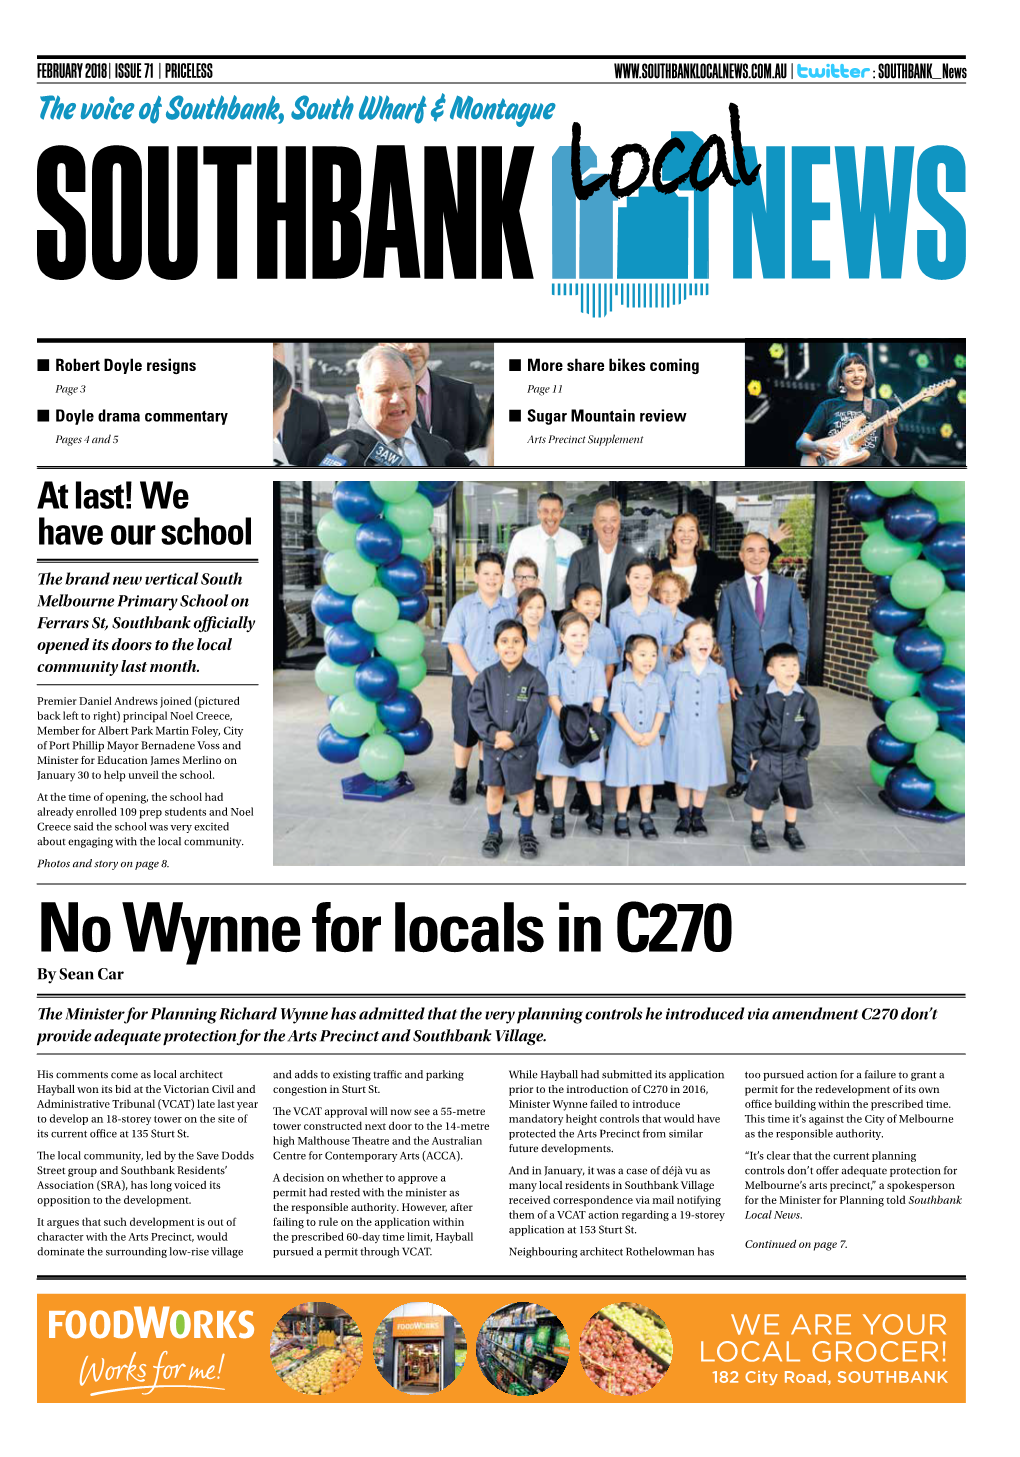 No Wynne for Locals in C270 by Sean Car